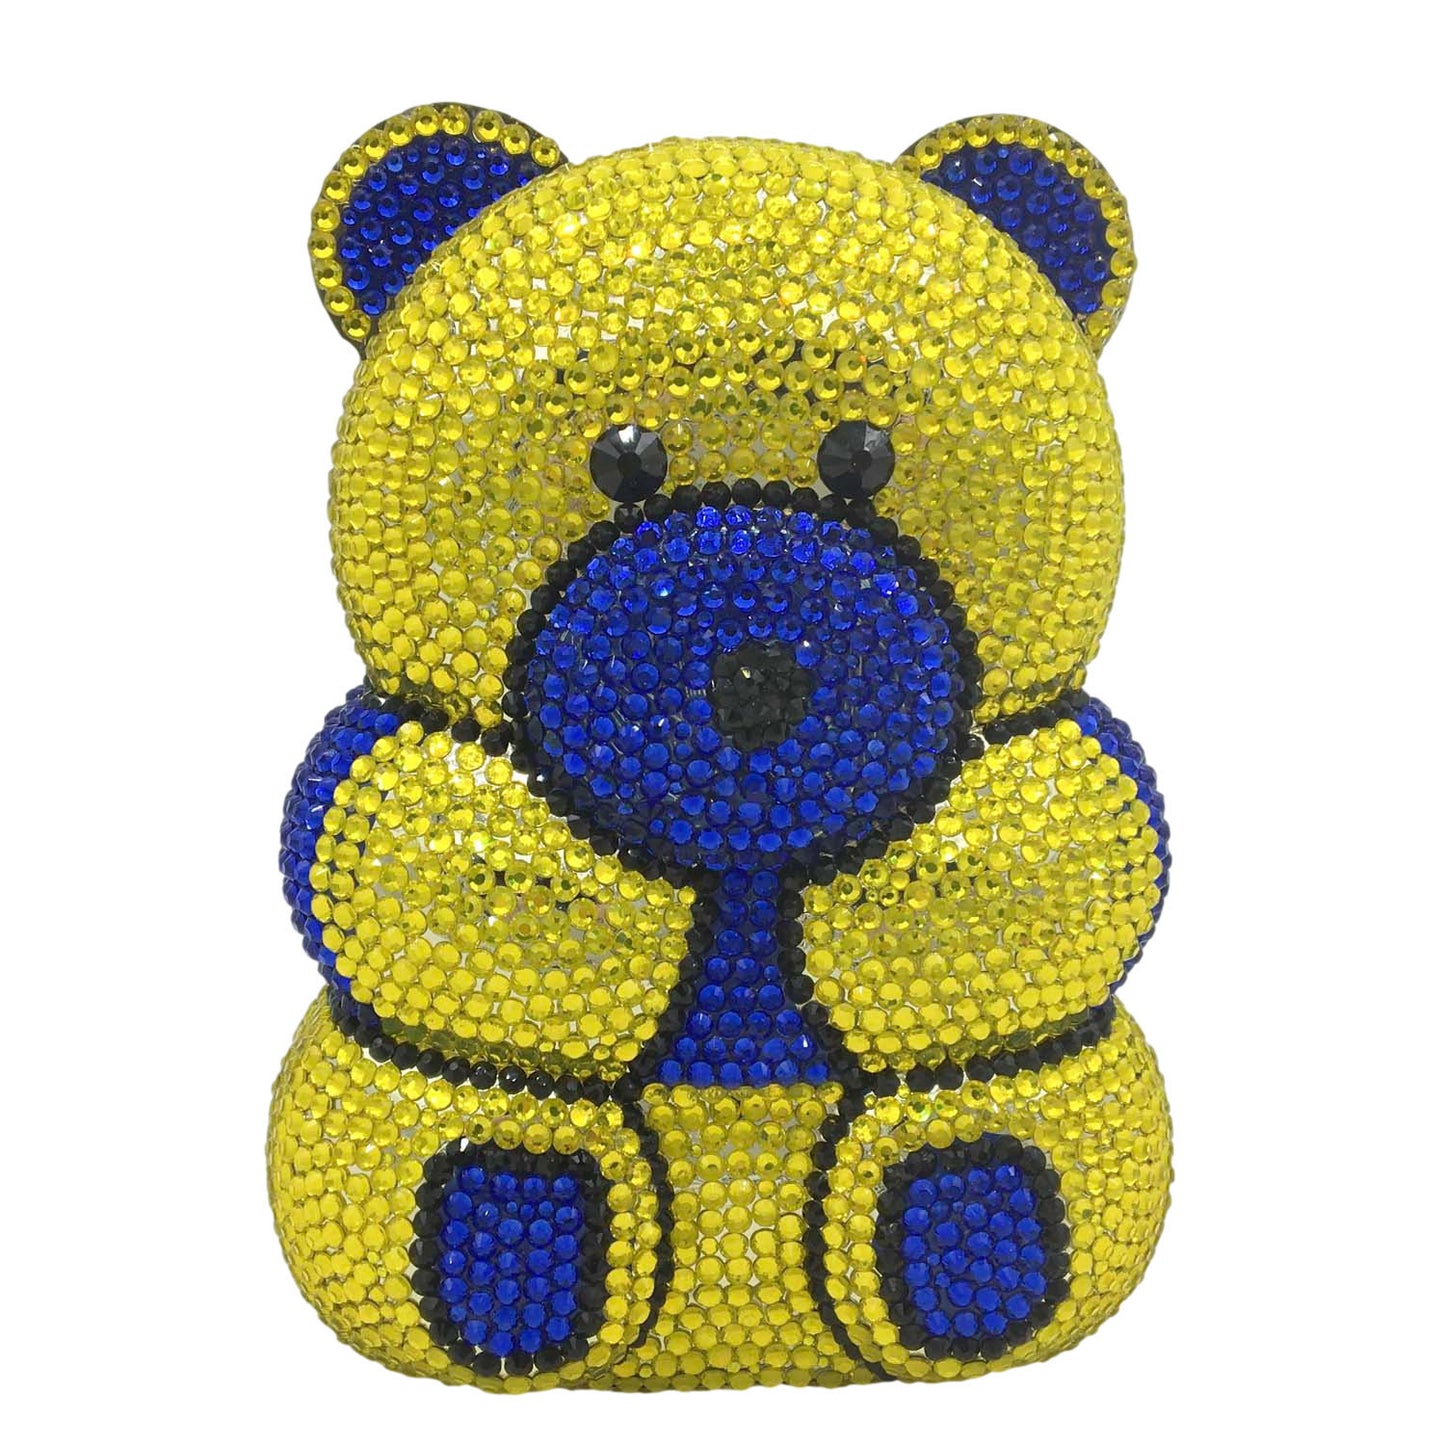 The Teddy Bear Clutch Bag